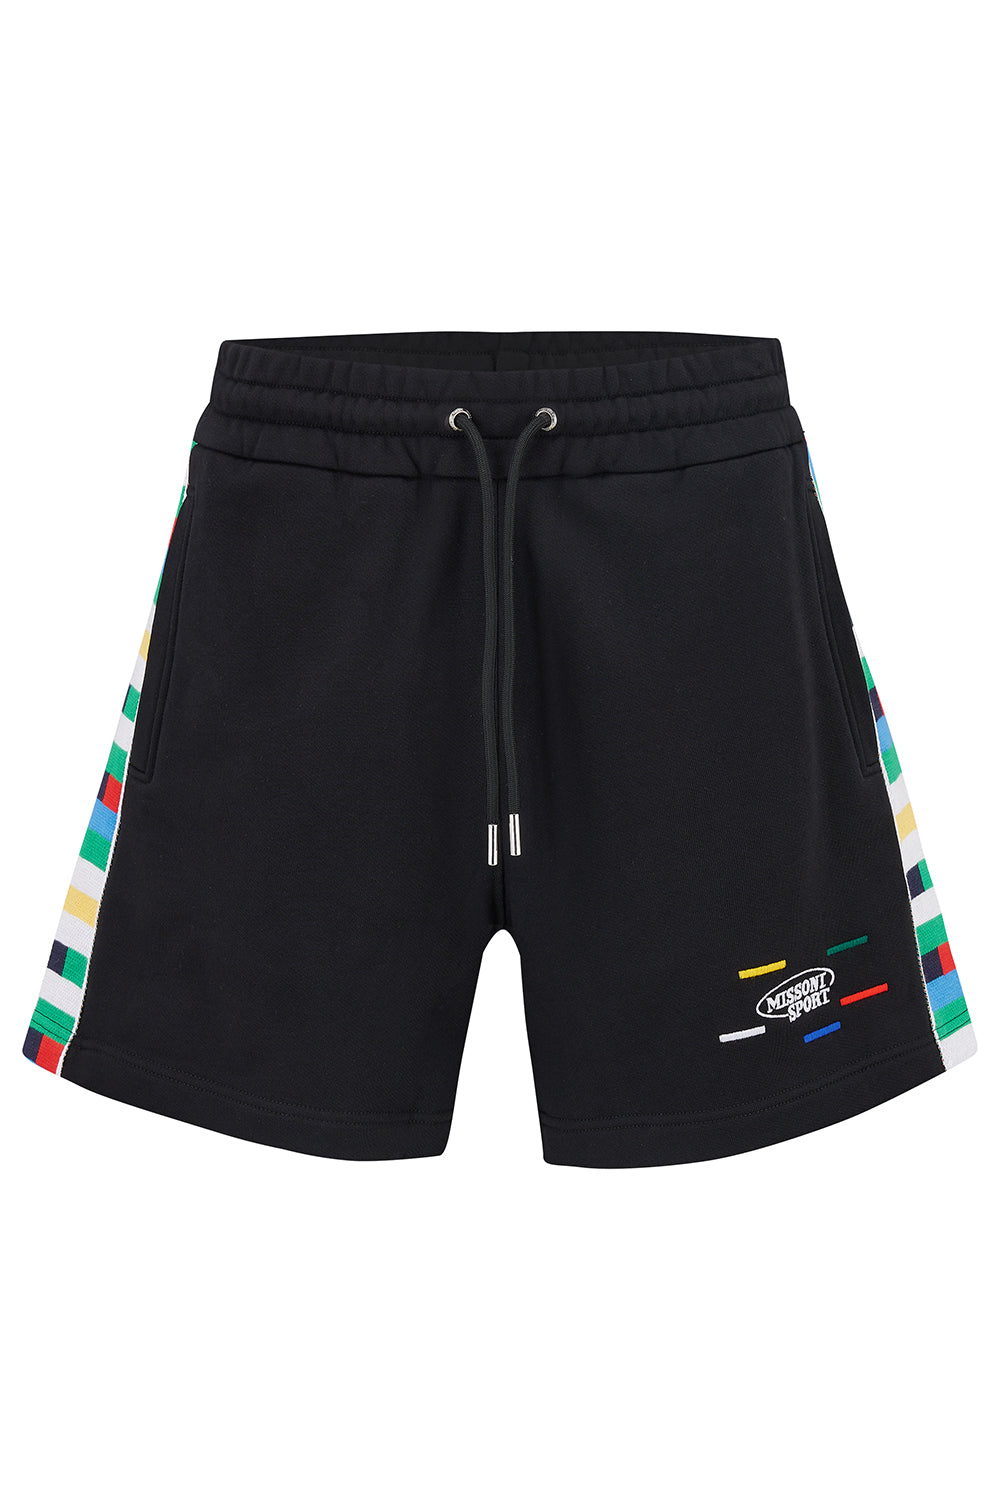 Missoni Men’s Shorts Black - Front View